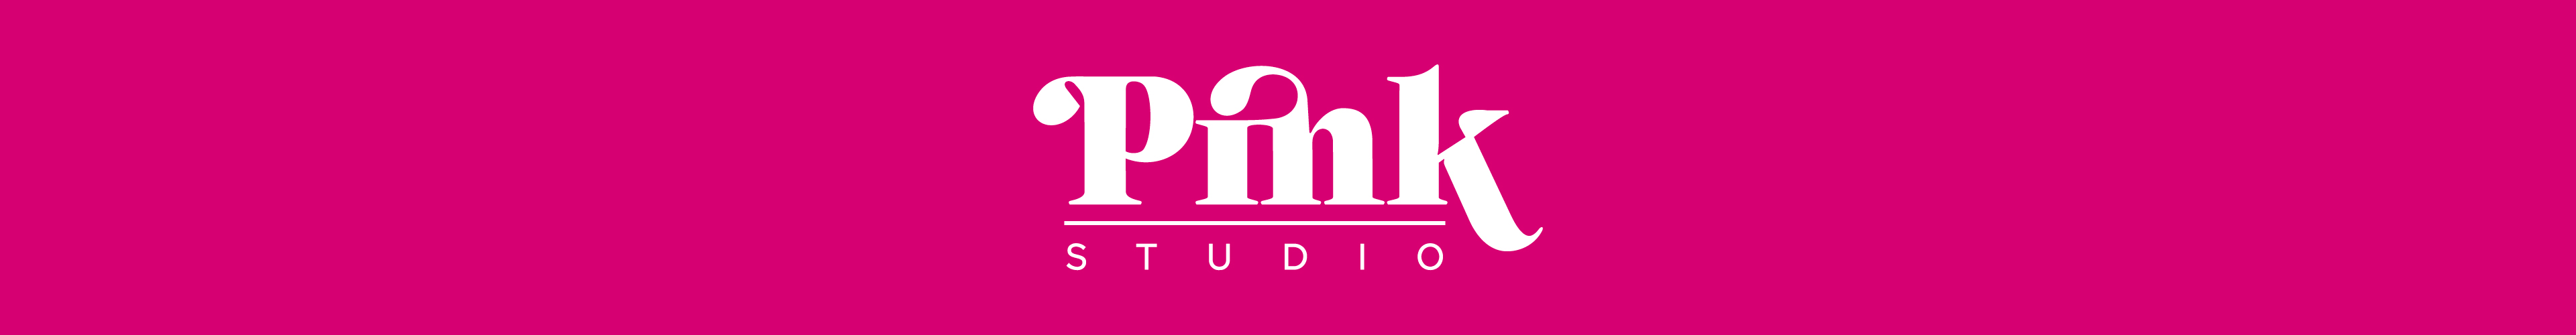 Pink Studio | Studio F